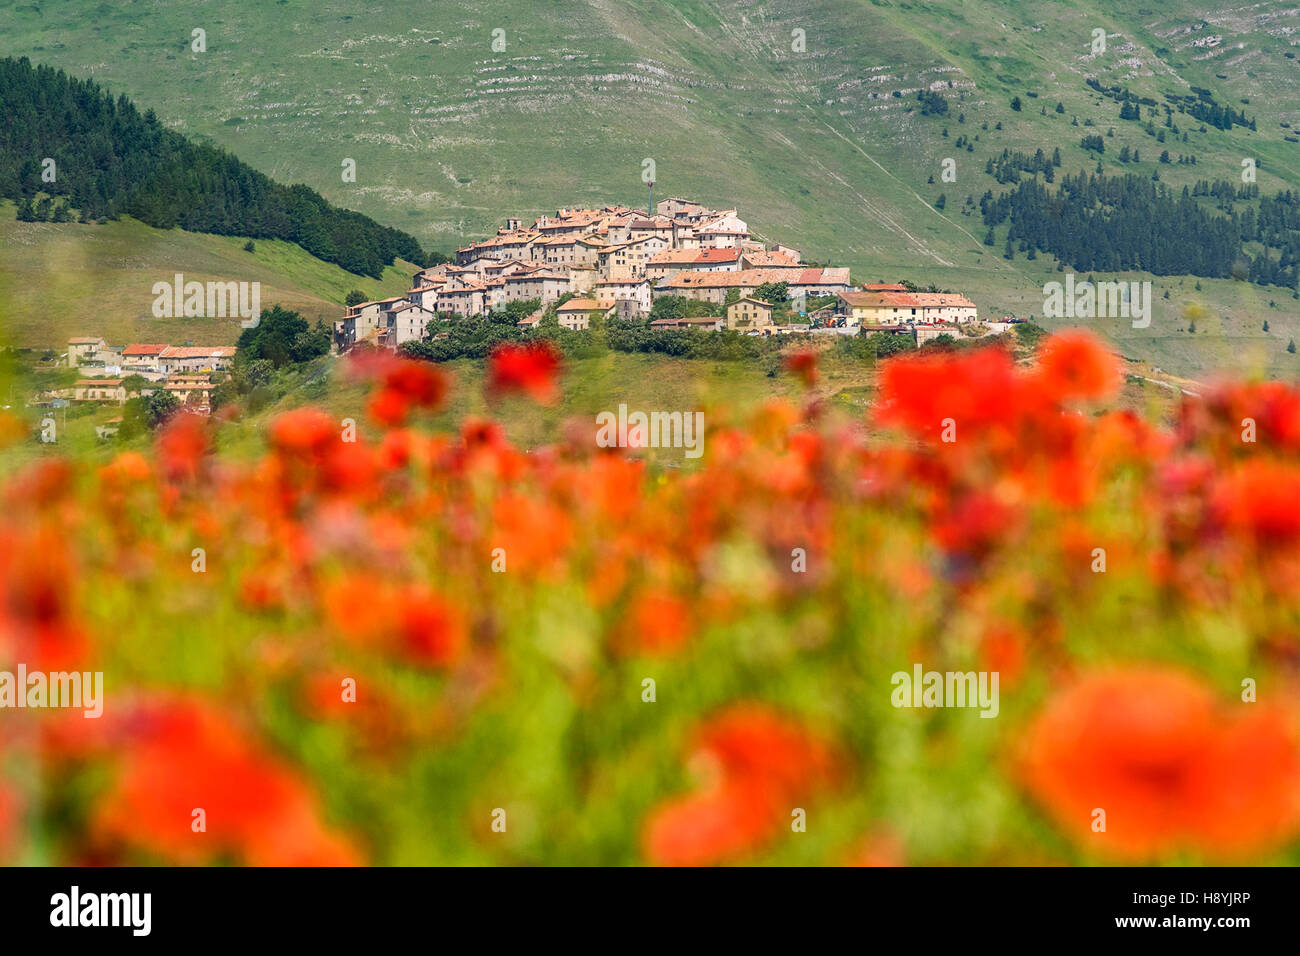 Castelluccio di Norcia, Umbrien, das grüne Herz Italiens. Die Blüte-Magie, die jedes Jahr zwischen Juni und Juli blüht. Stockfoto